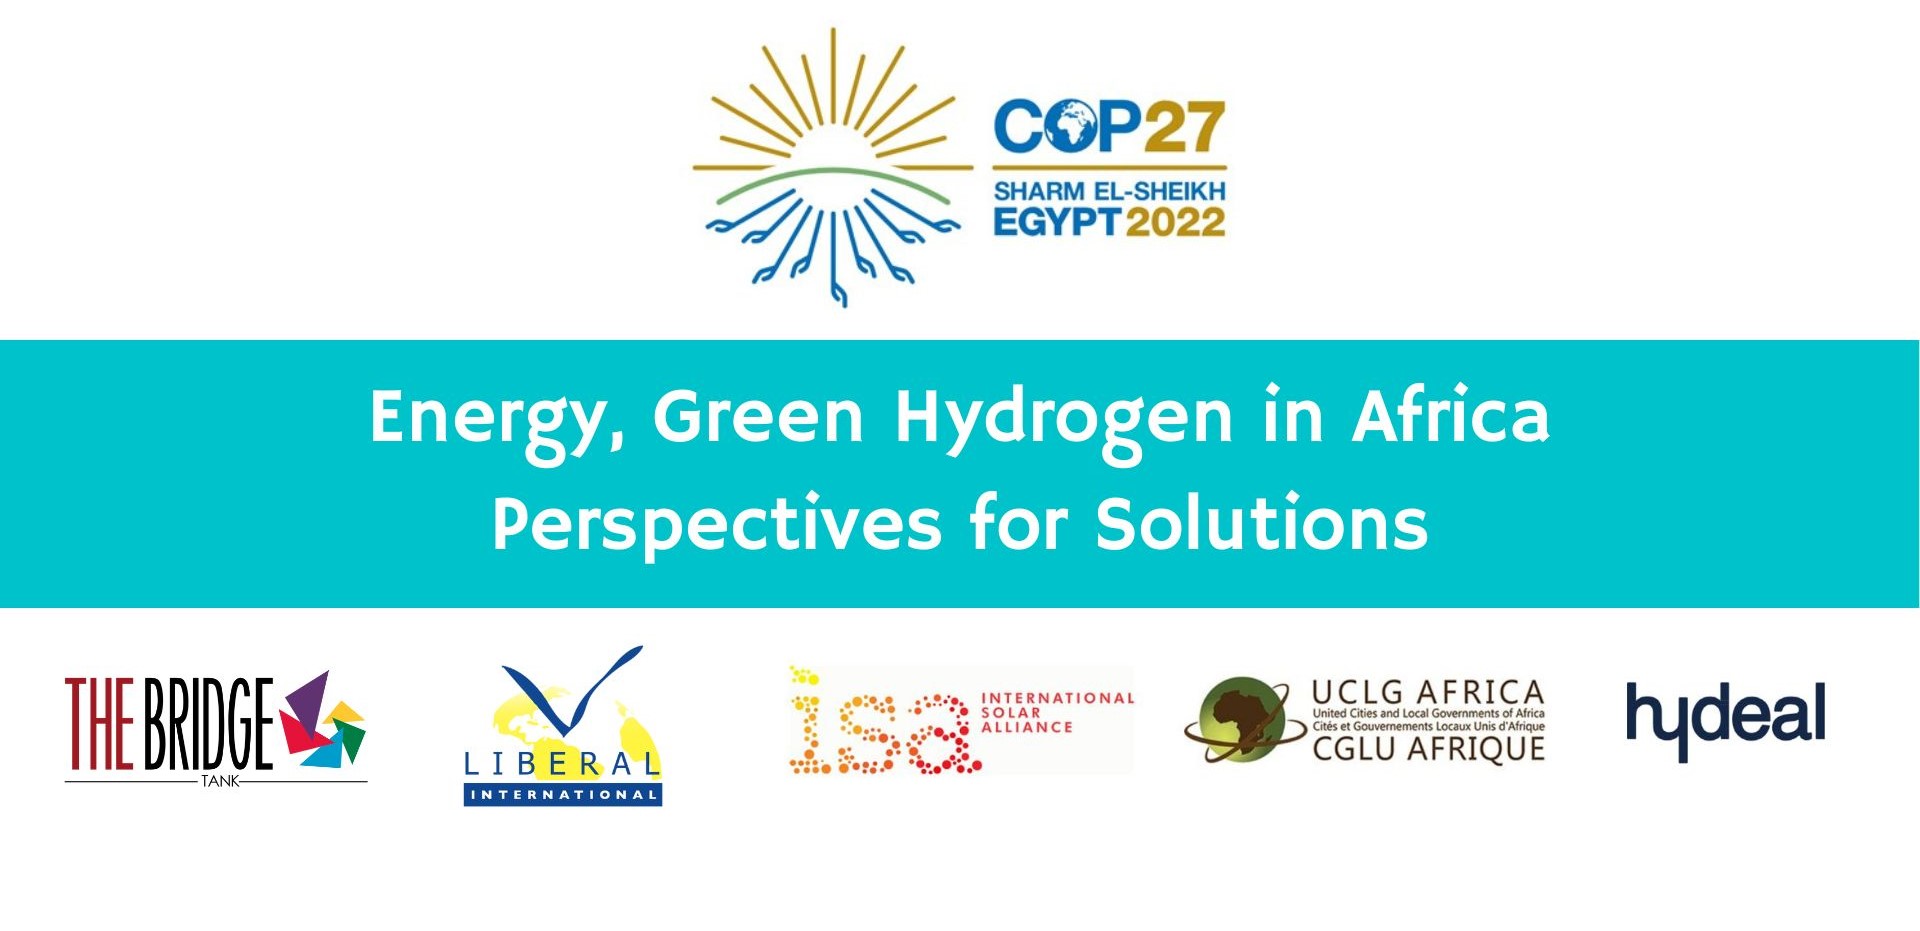 The Bridge Tank poursuit son engagement sur l’hydrogène lors de la COP 27 à travers un panel de haut niveau sur les Hubs d’Hydrogène Vert en Afrique